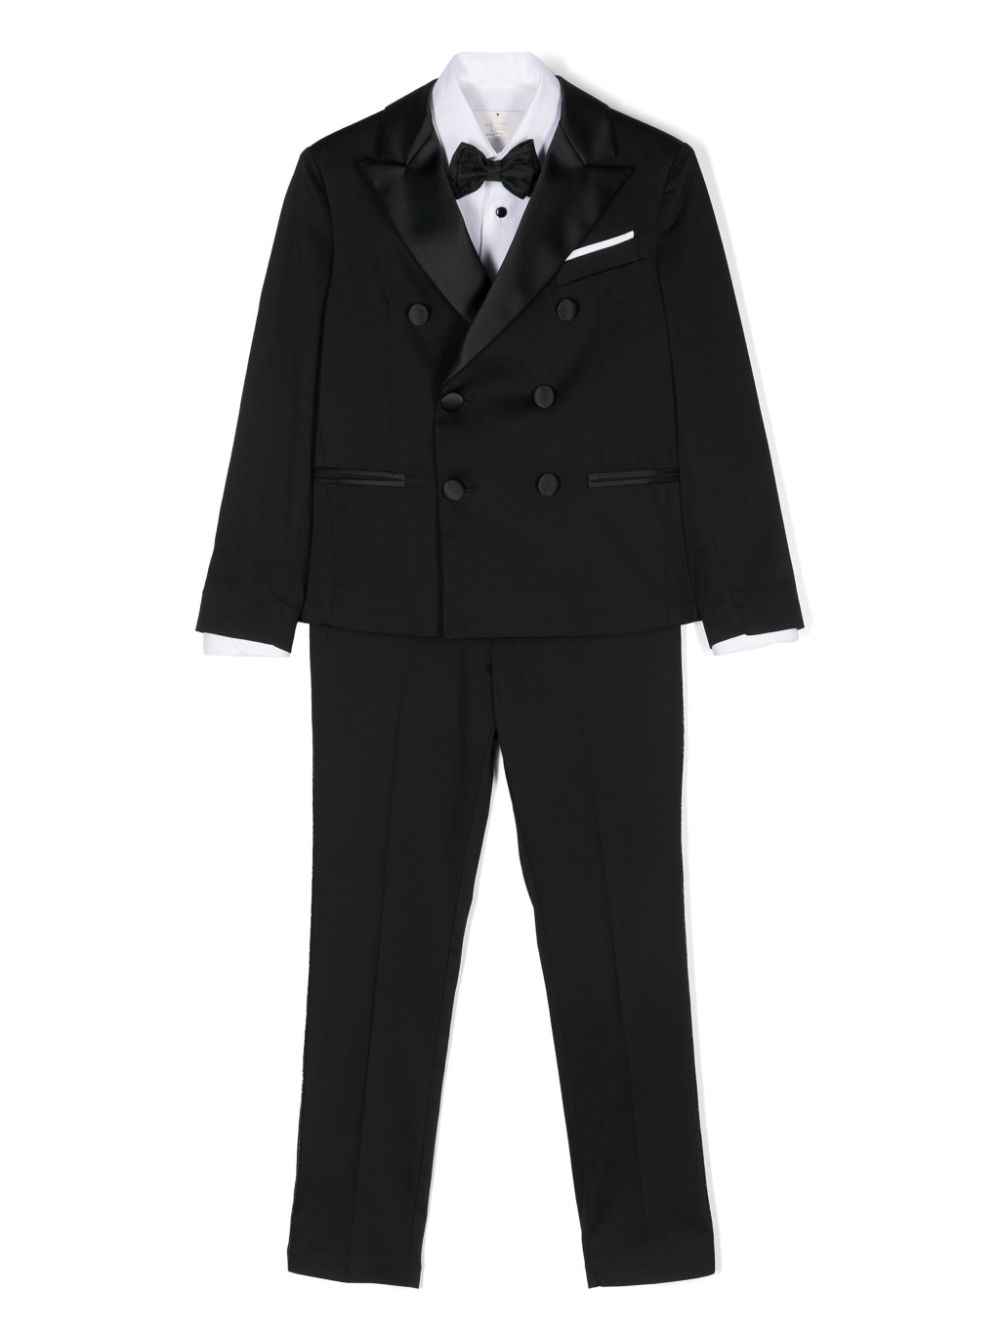 Colorichiari Kids' Three-piece Suit In Black